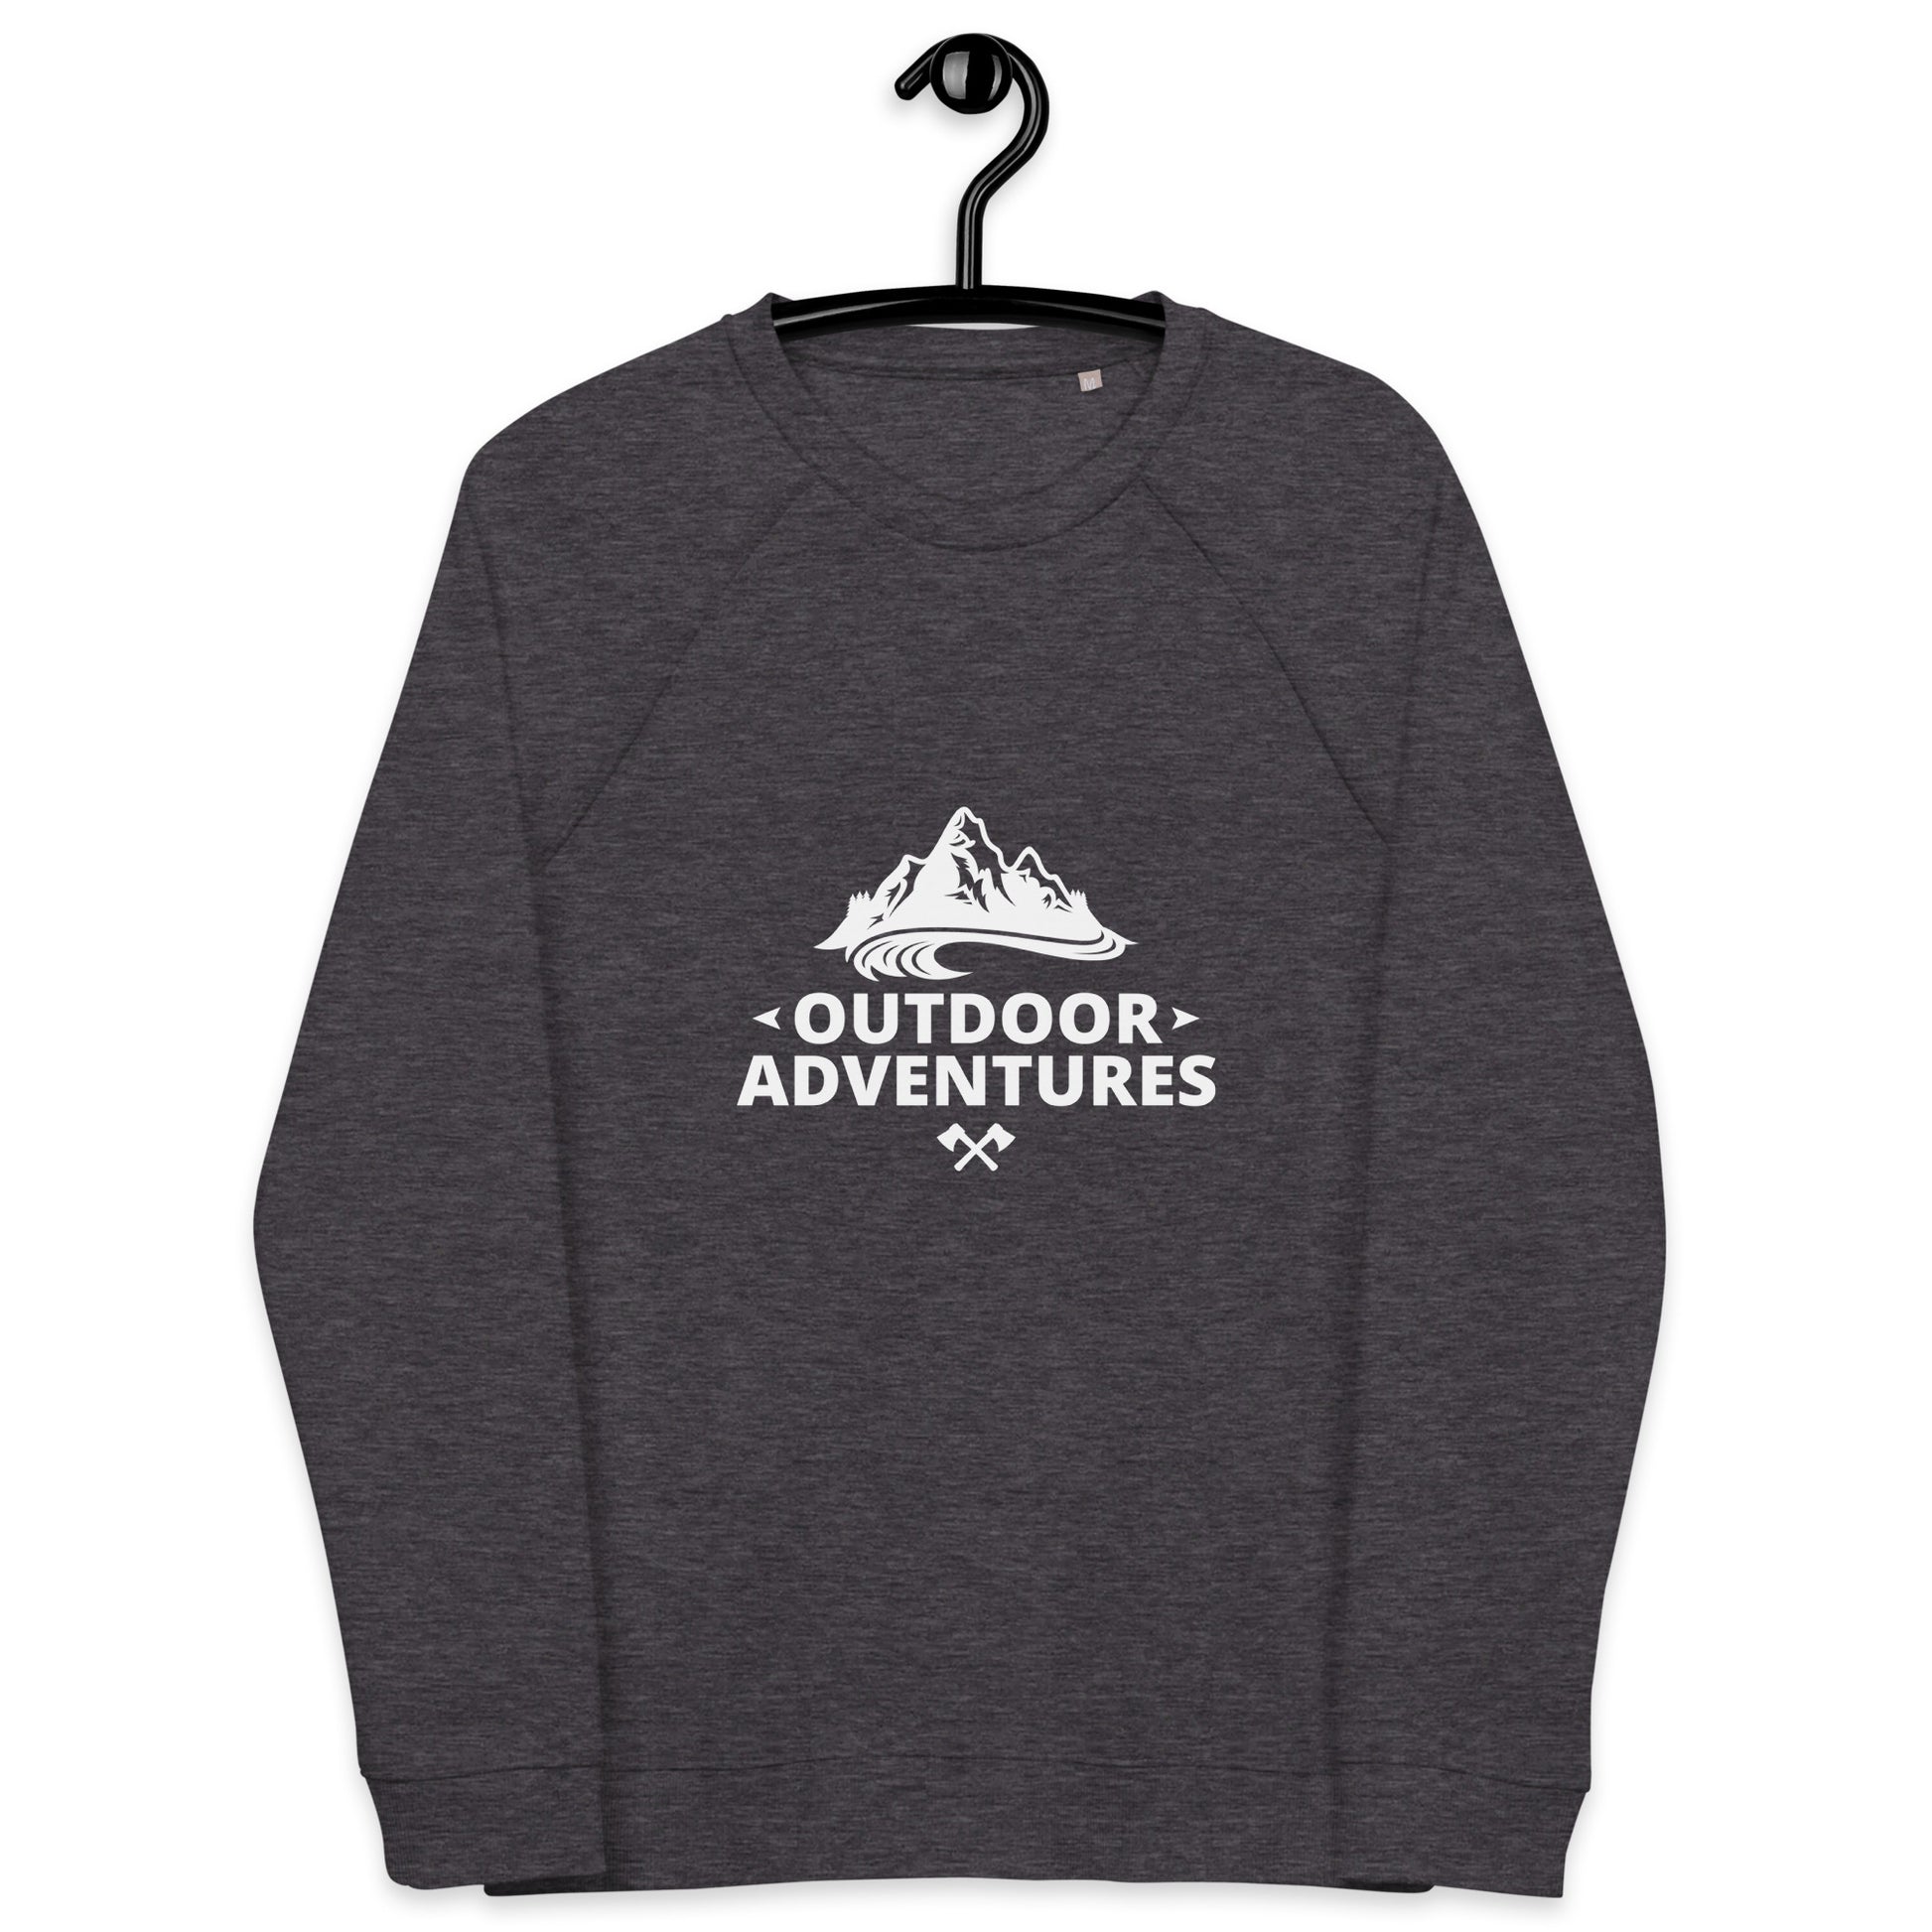 Outdoor Adventures - Unisex organic raglan sweatshirt - HobbyMeFree